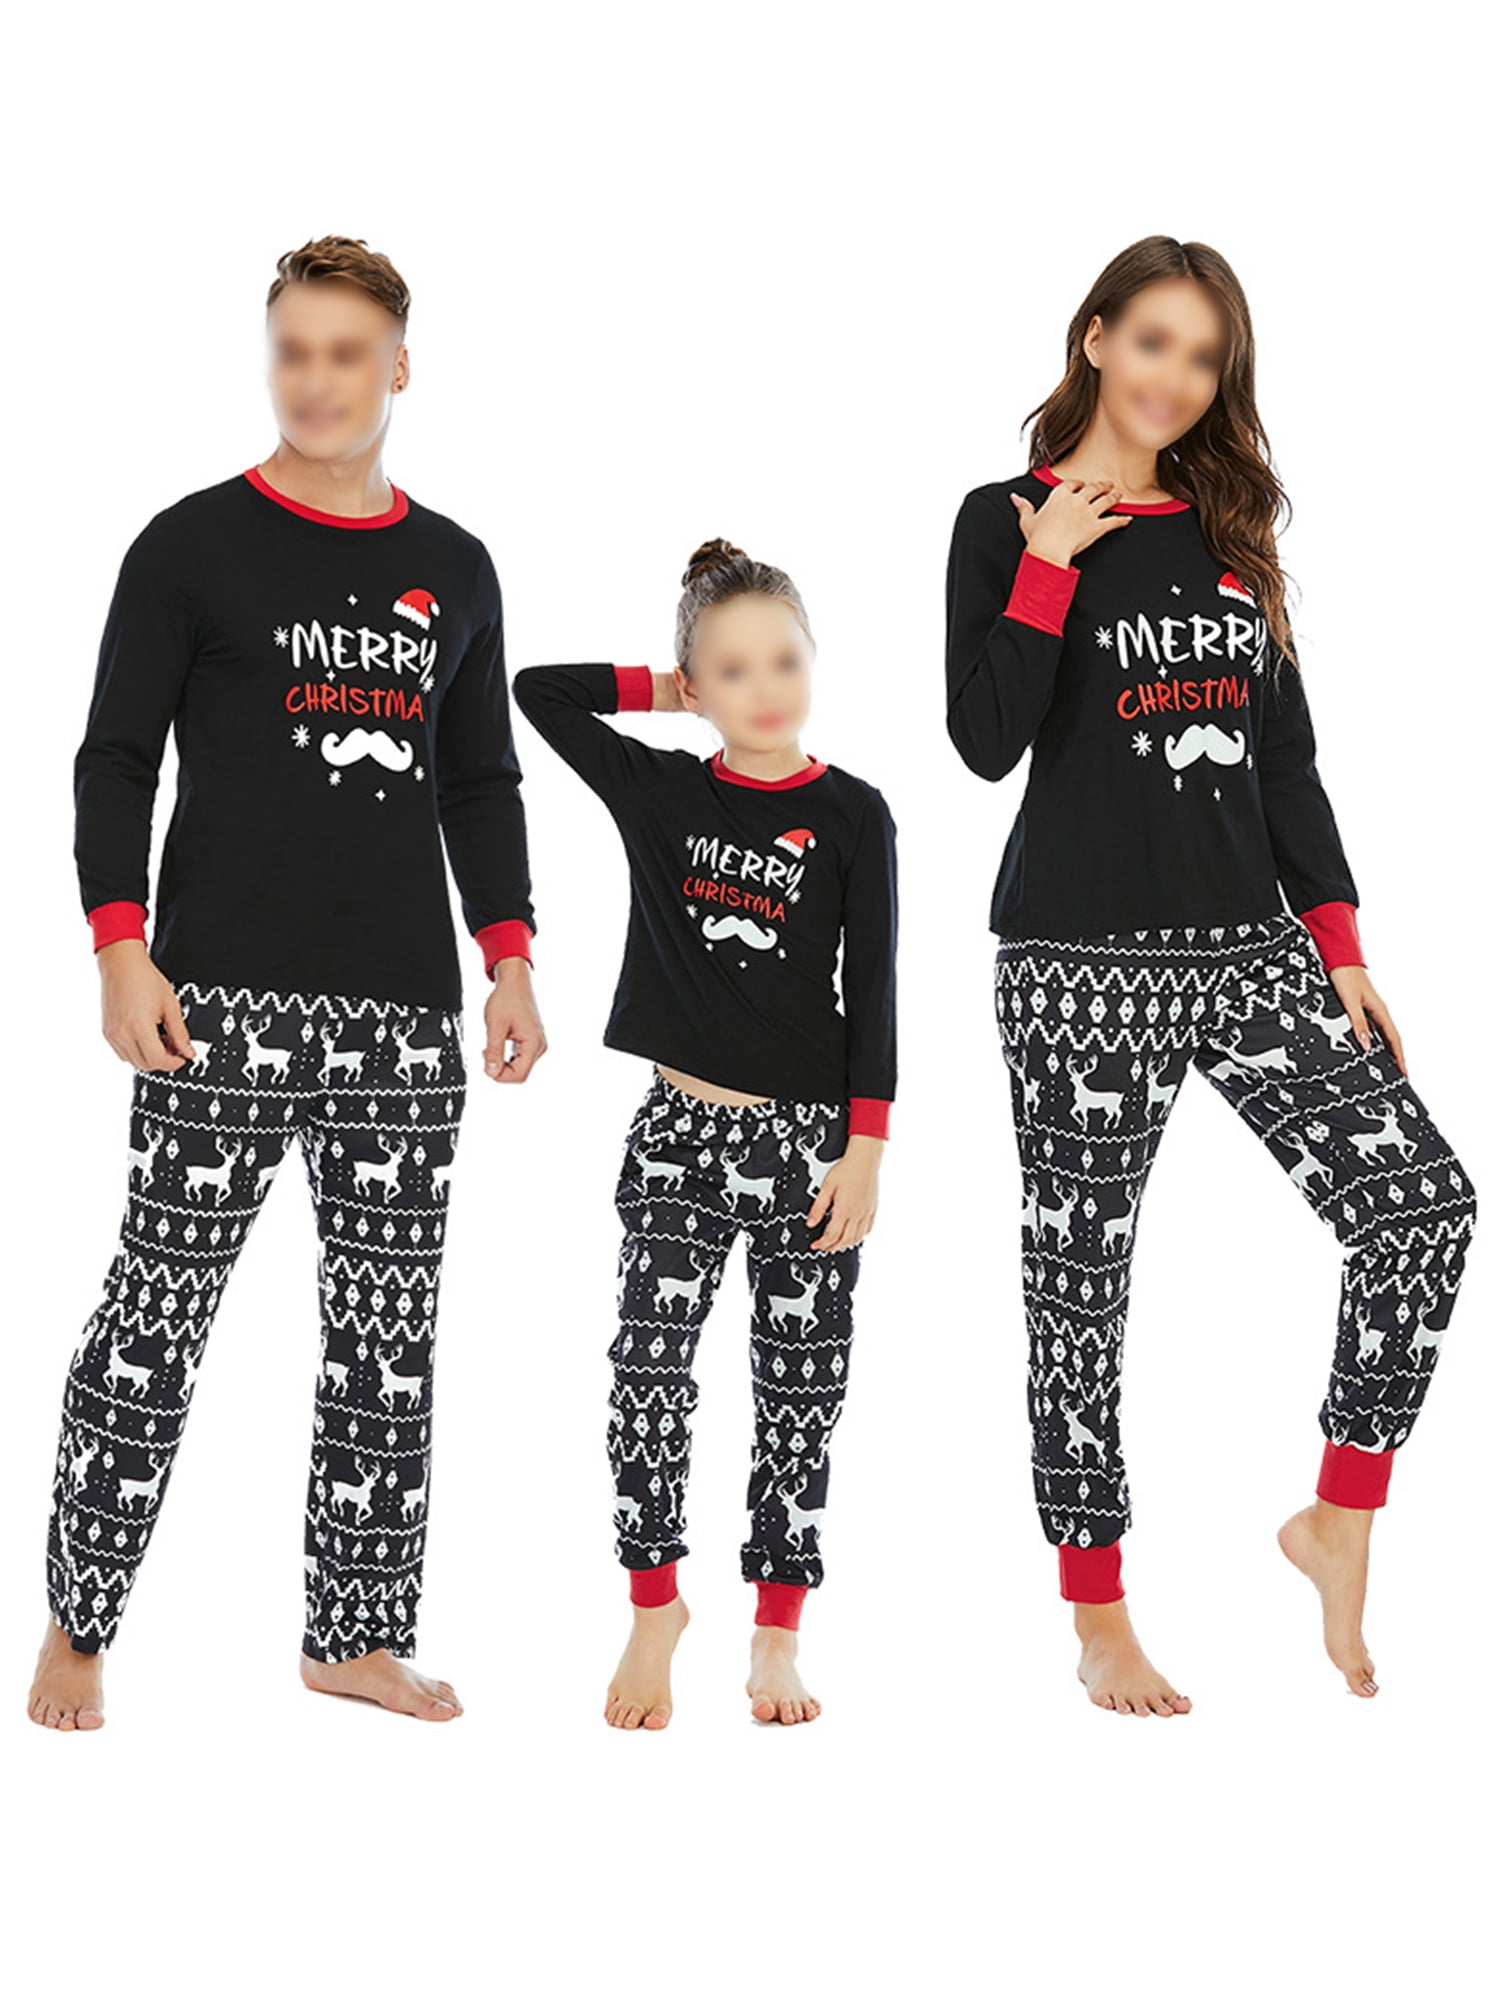 Family Matching Adult Kisd Christmas Pyjamas Pajamas Sleepwear Nightwear PJs Set 